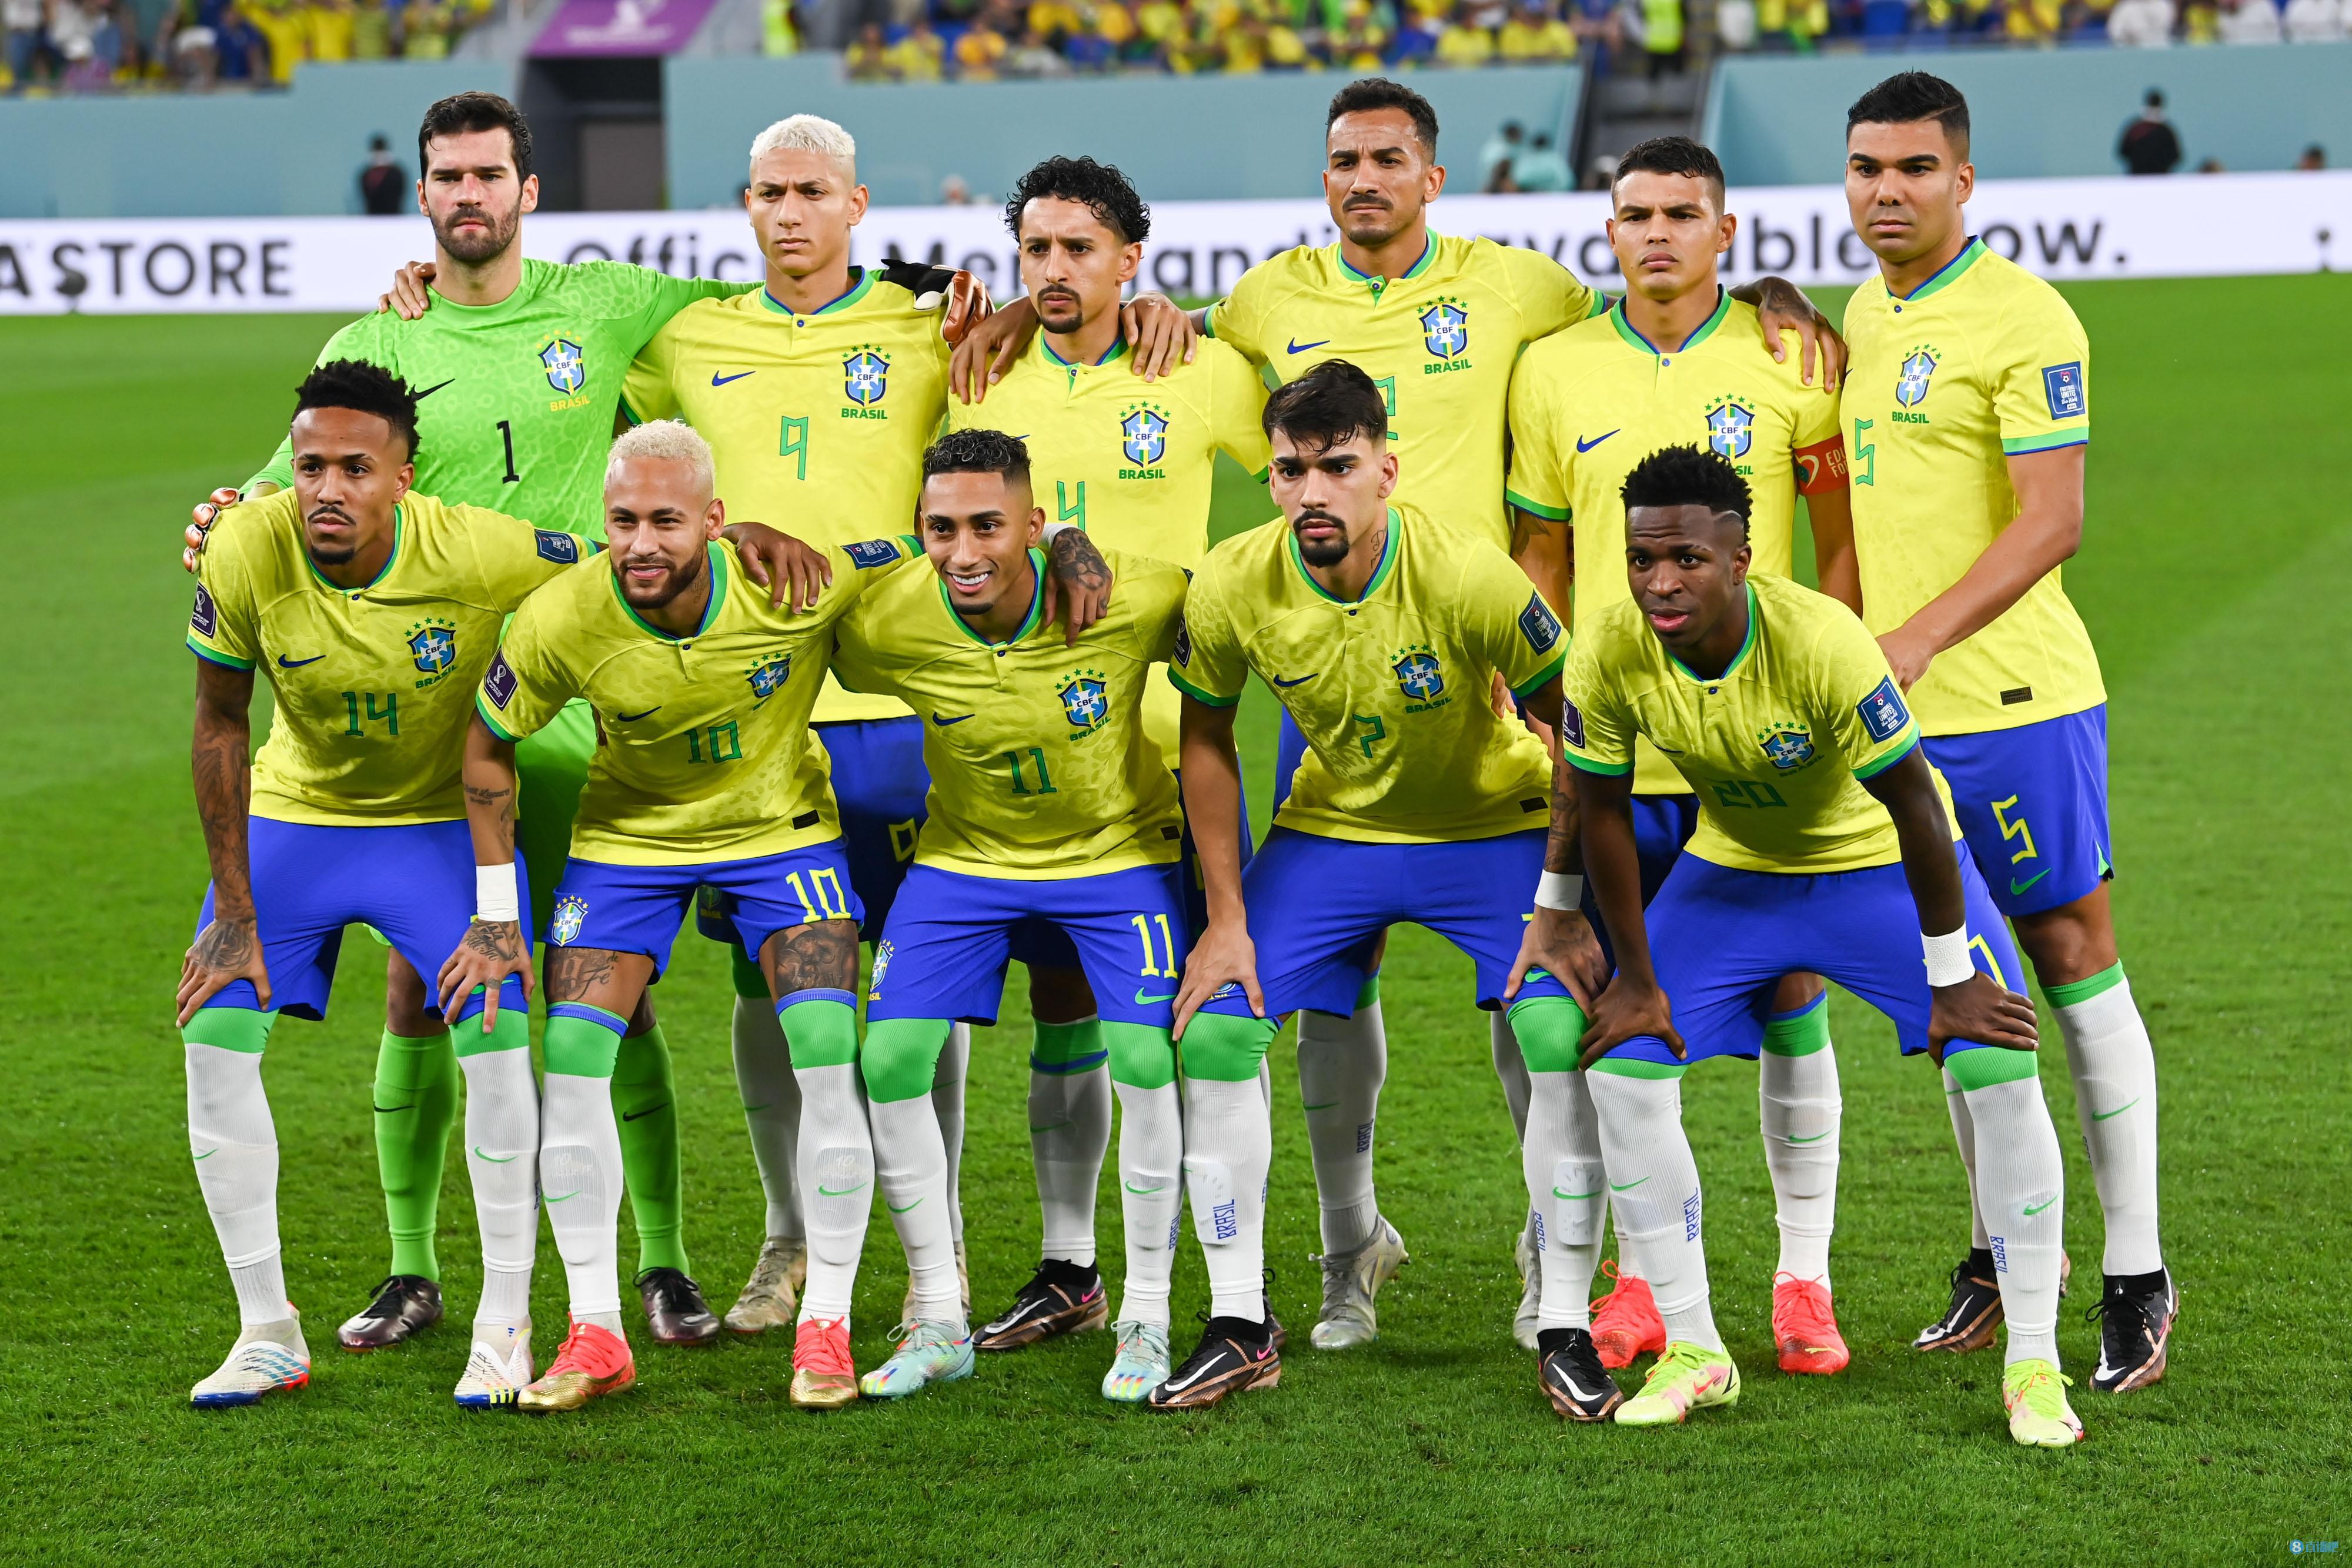 2014年巴西世界杯共有32支球队参赛 德国英格兰巴西进入世界杯四强,甲说冠军不是巴西 巴西世界杯三四名决赛 2014年巴西世界杯八强 八强球队参加1/4决赛次数：巴西14次最多，英格兰10次第二